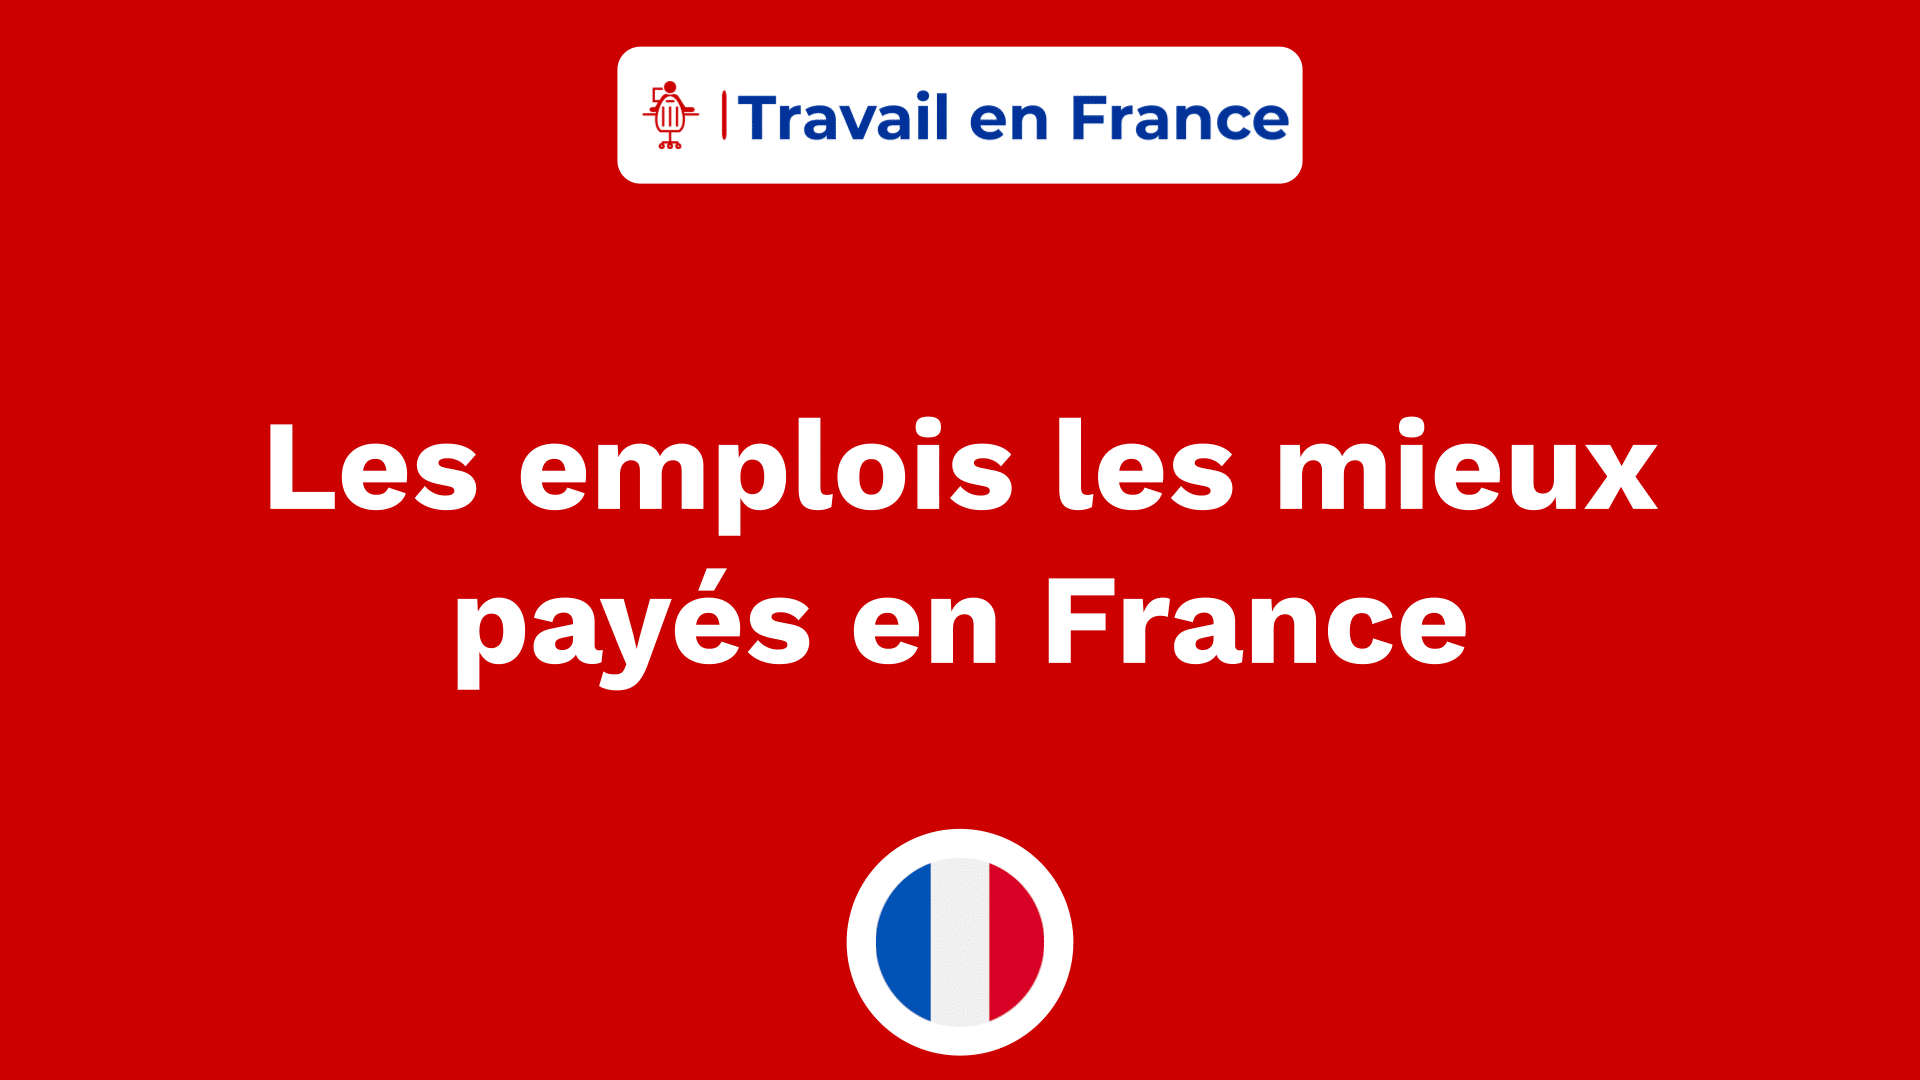 Les emplois les mieux payés en France ! les métiers les plus rémunérés.